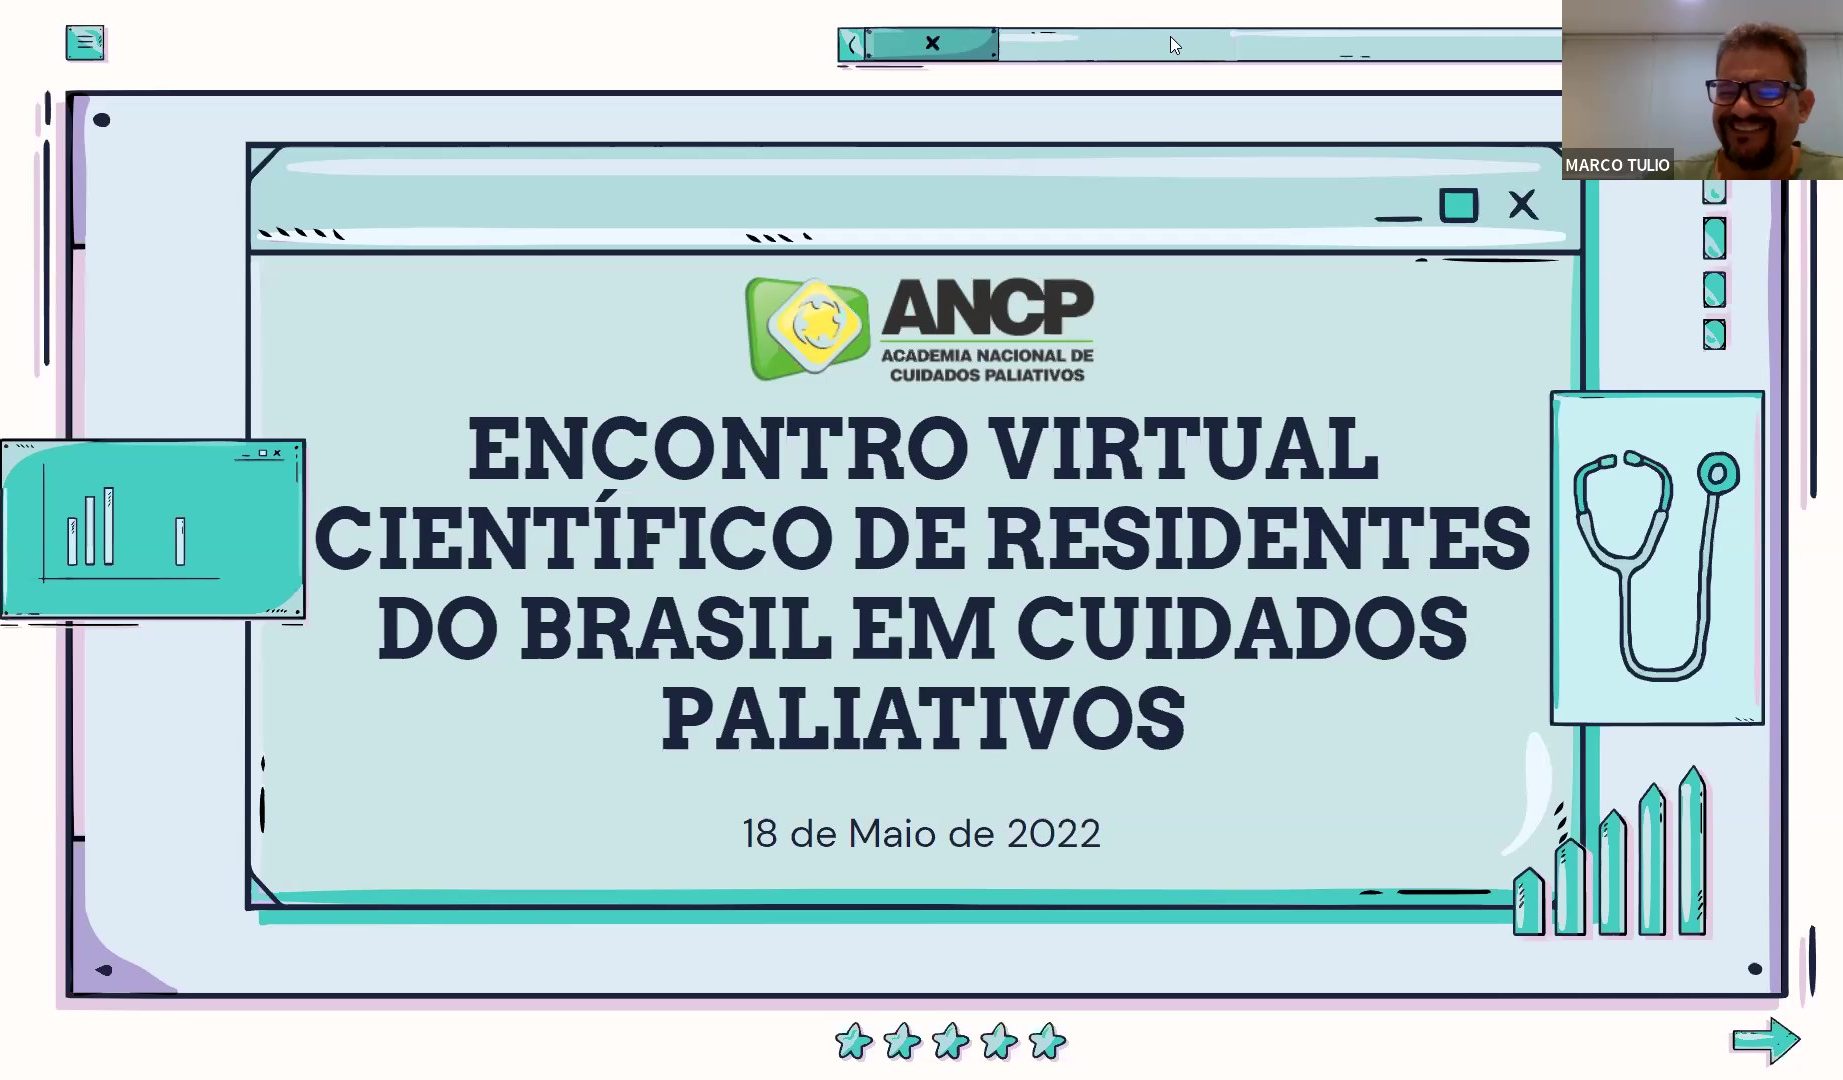 IV Encontro de Residentes em Cuidados Paliativos do Brasil debateu a importância da biografia dos pacientes